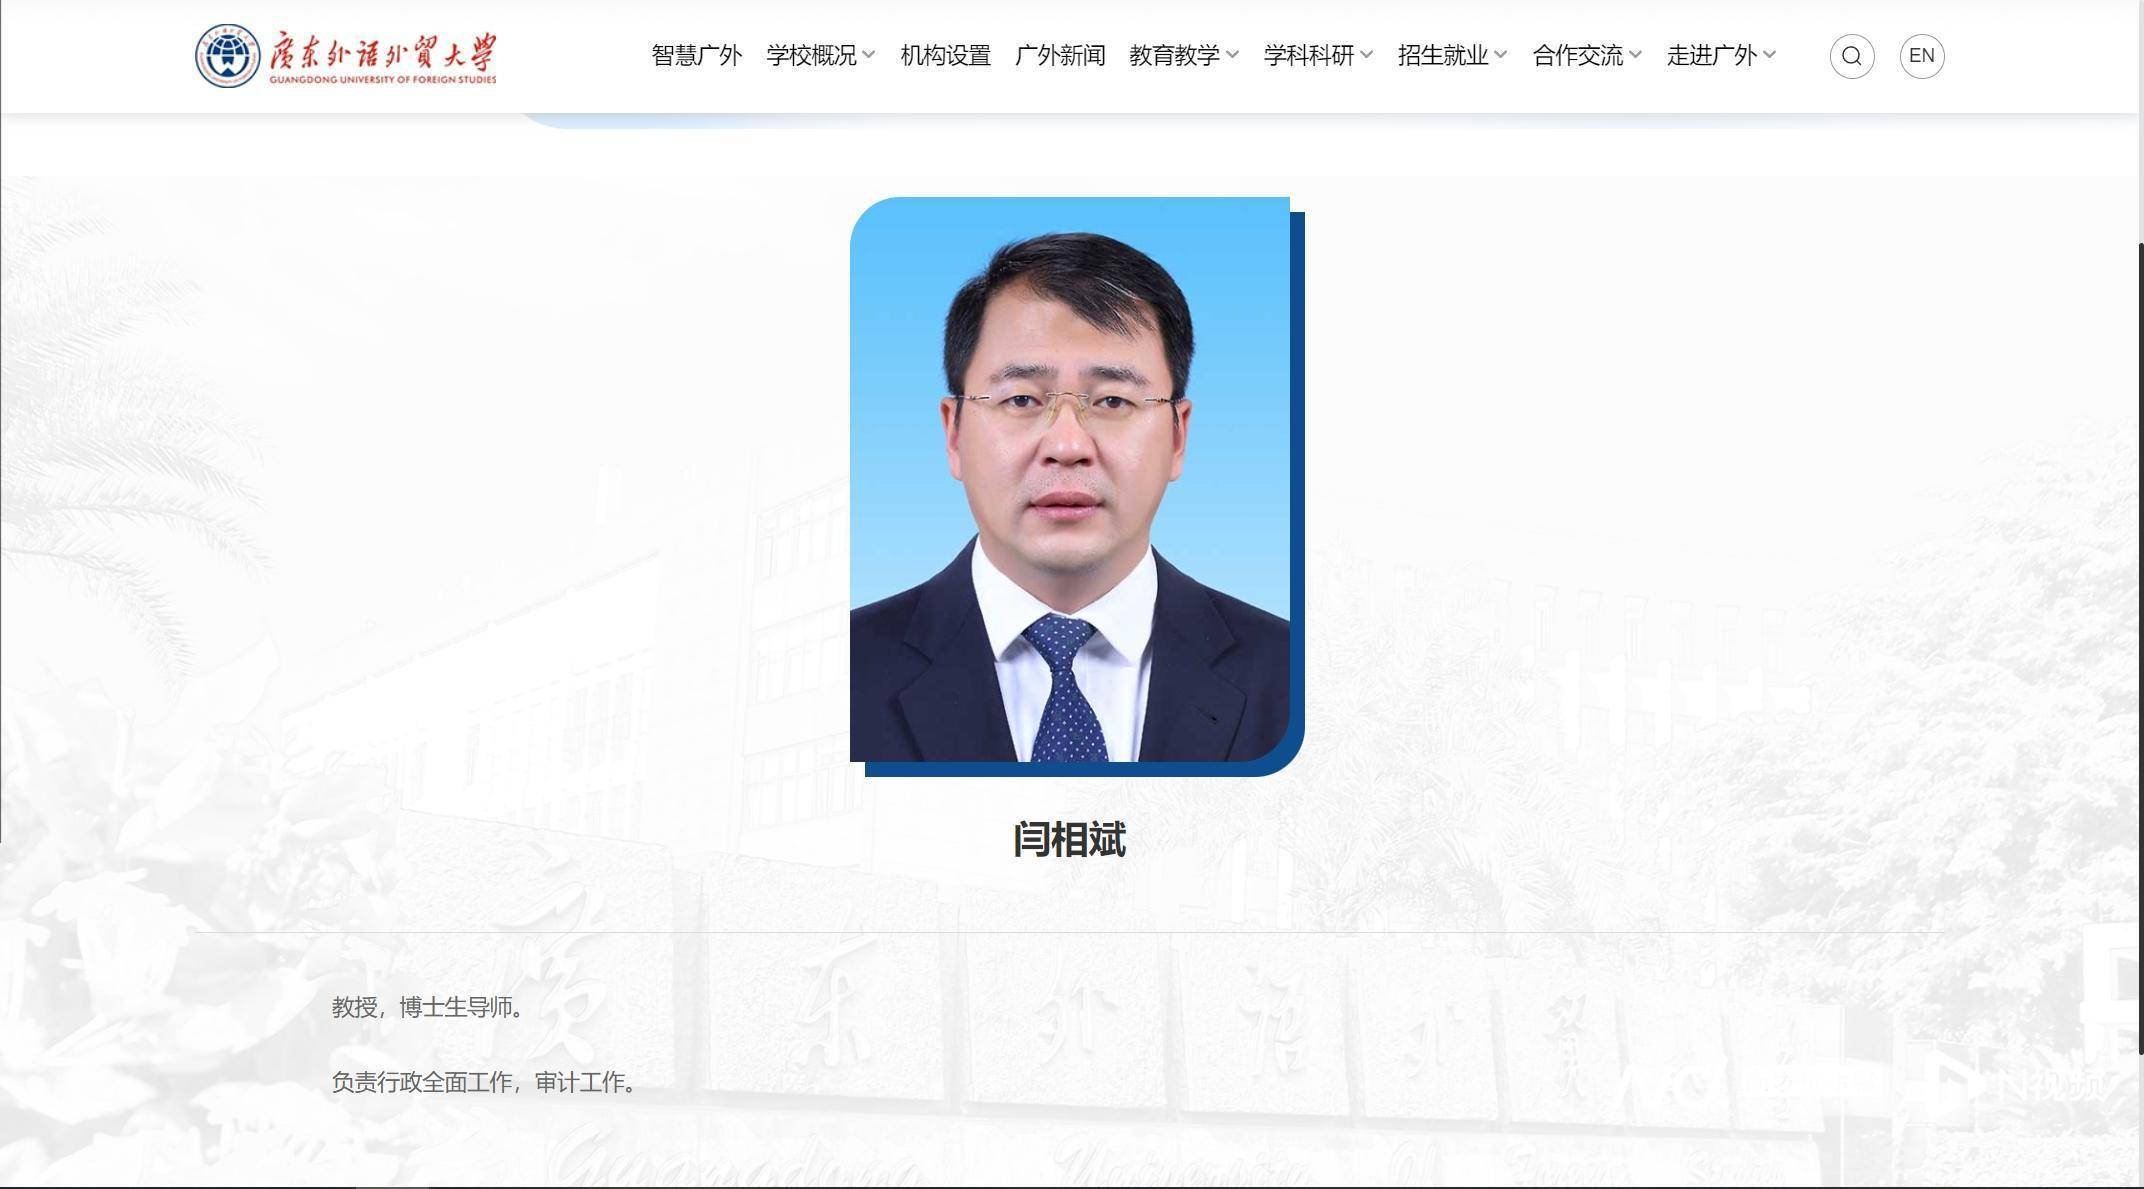 北京科技大学副校长闫相斌任广东外语外贸大学校长